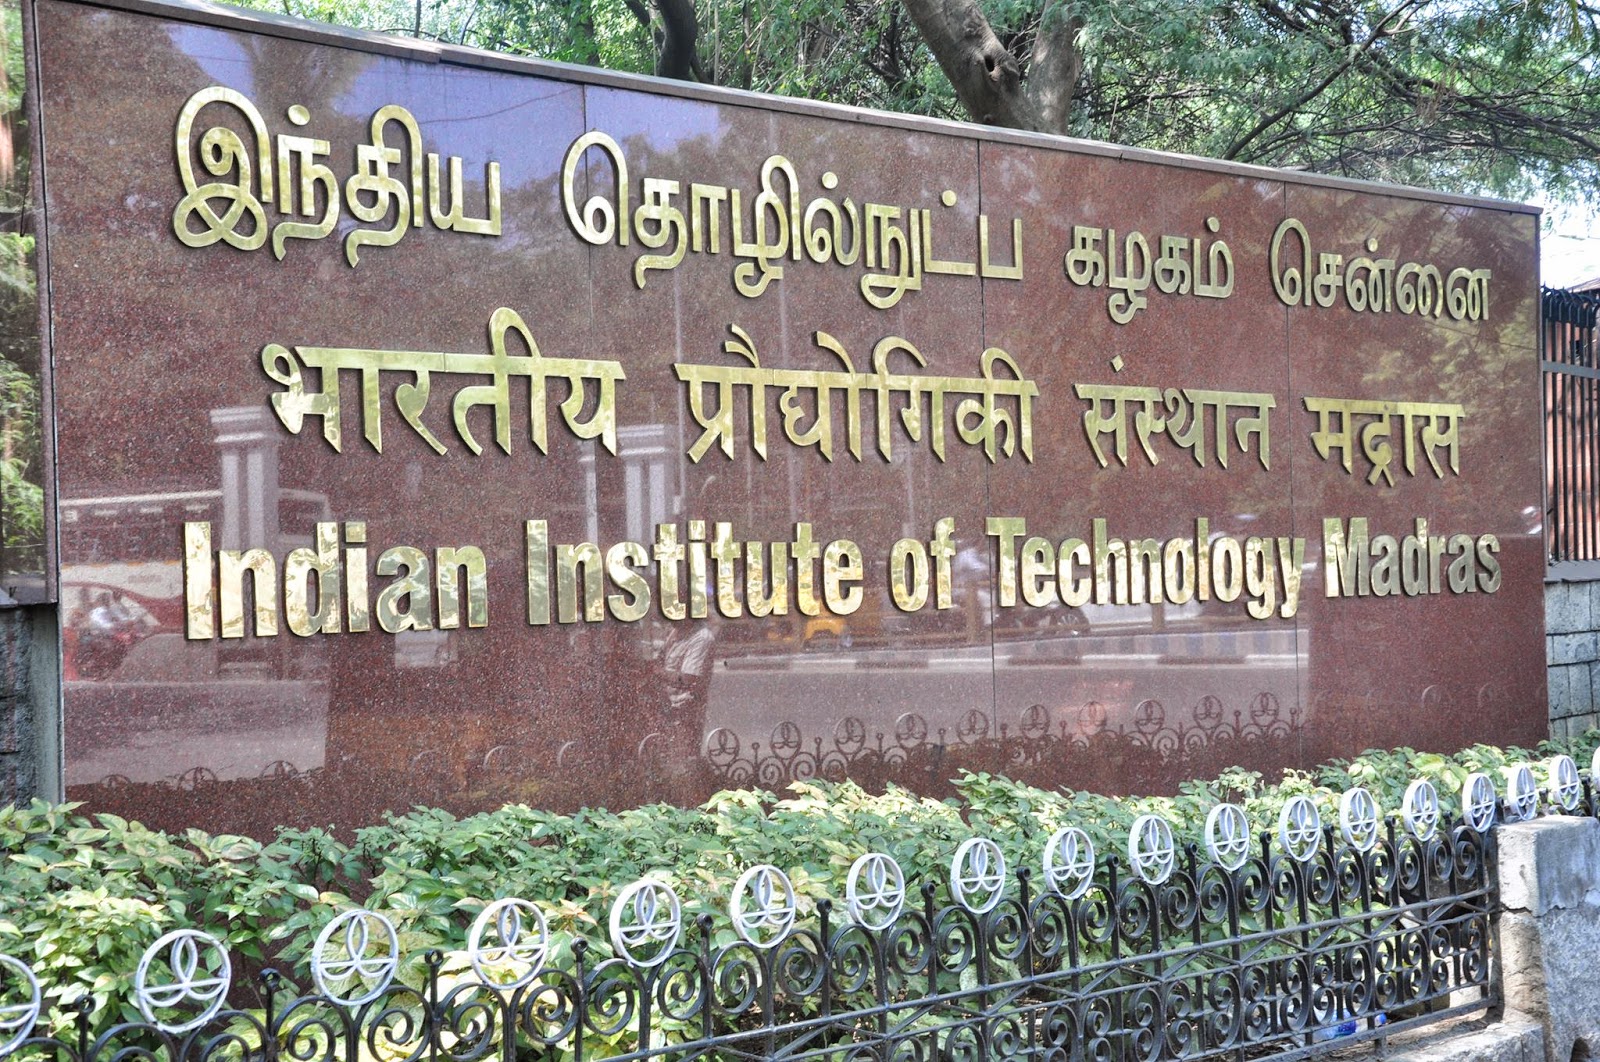 IIT, Chennai